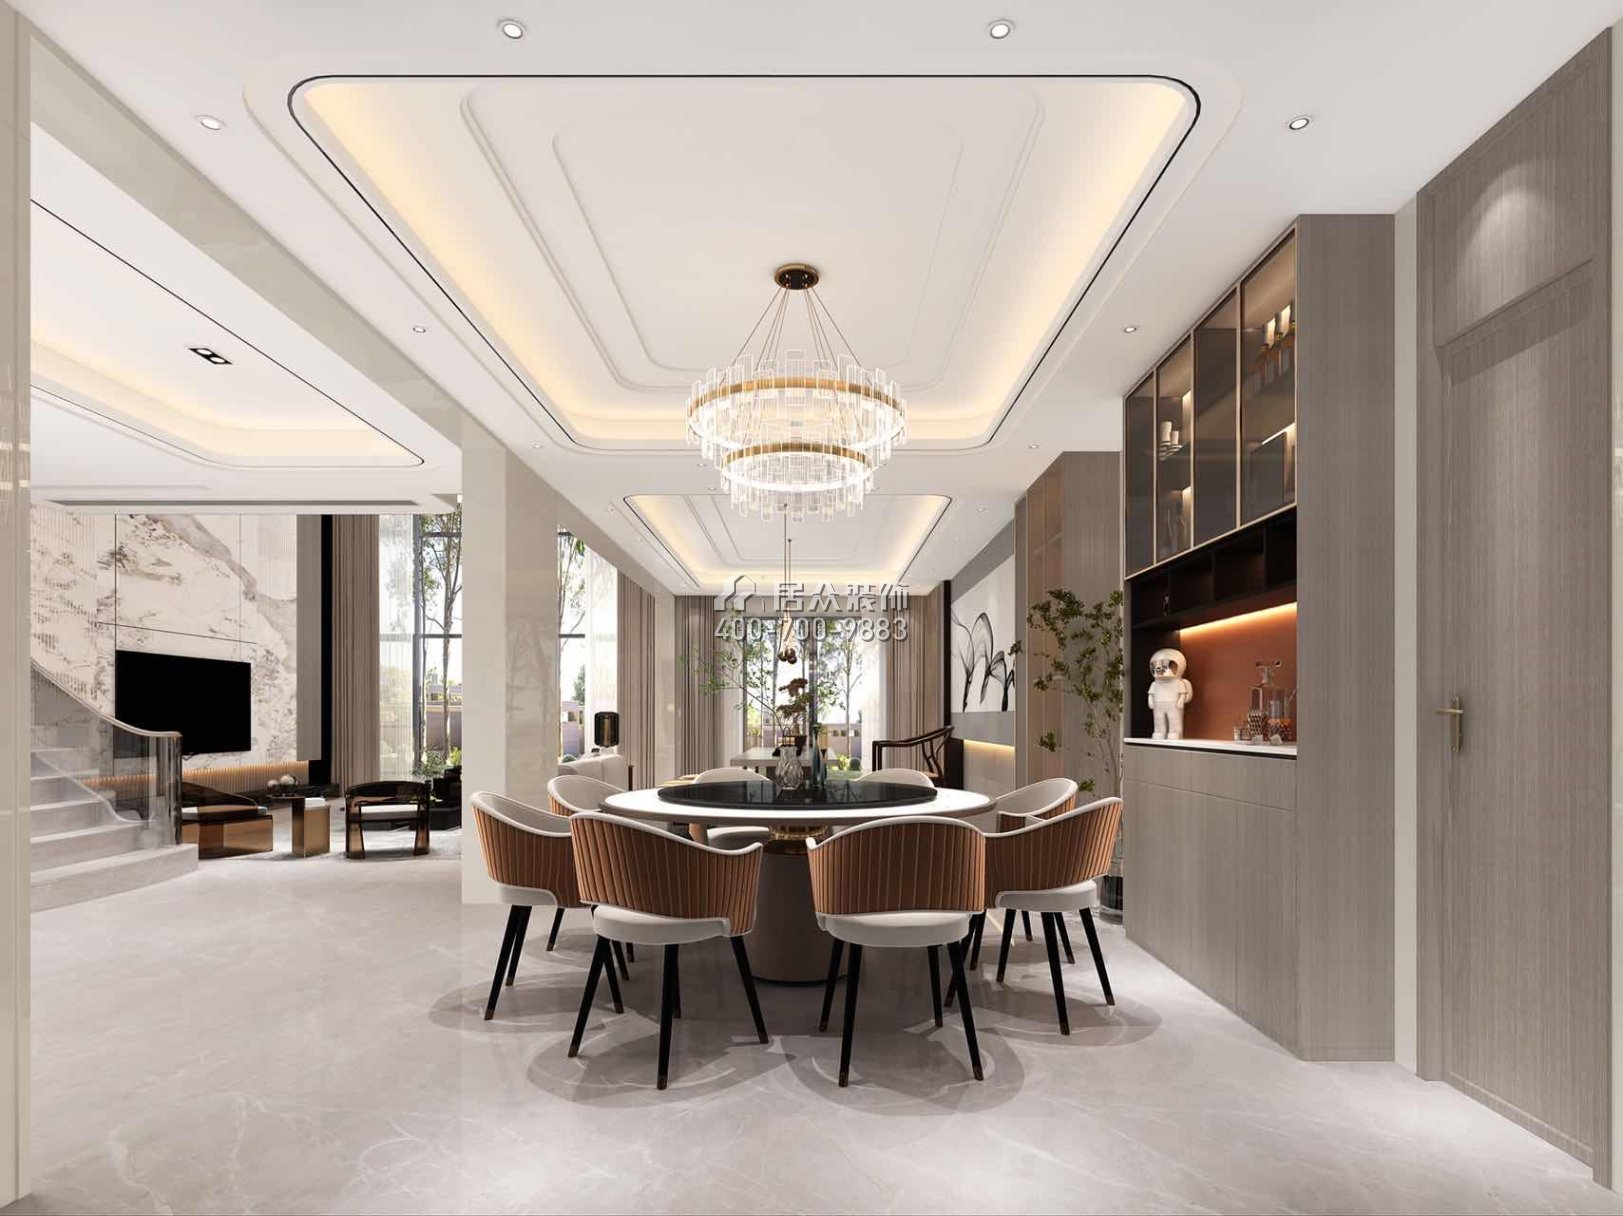 海逸豪庭321平方米现代简约风格别墅户型餐厅装修效果图